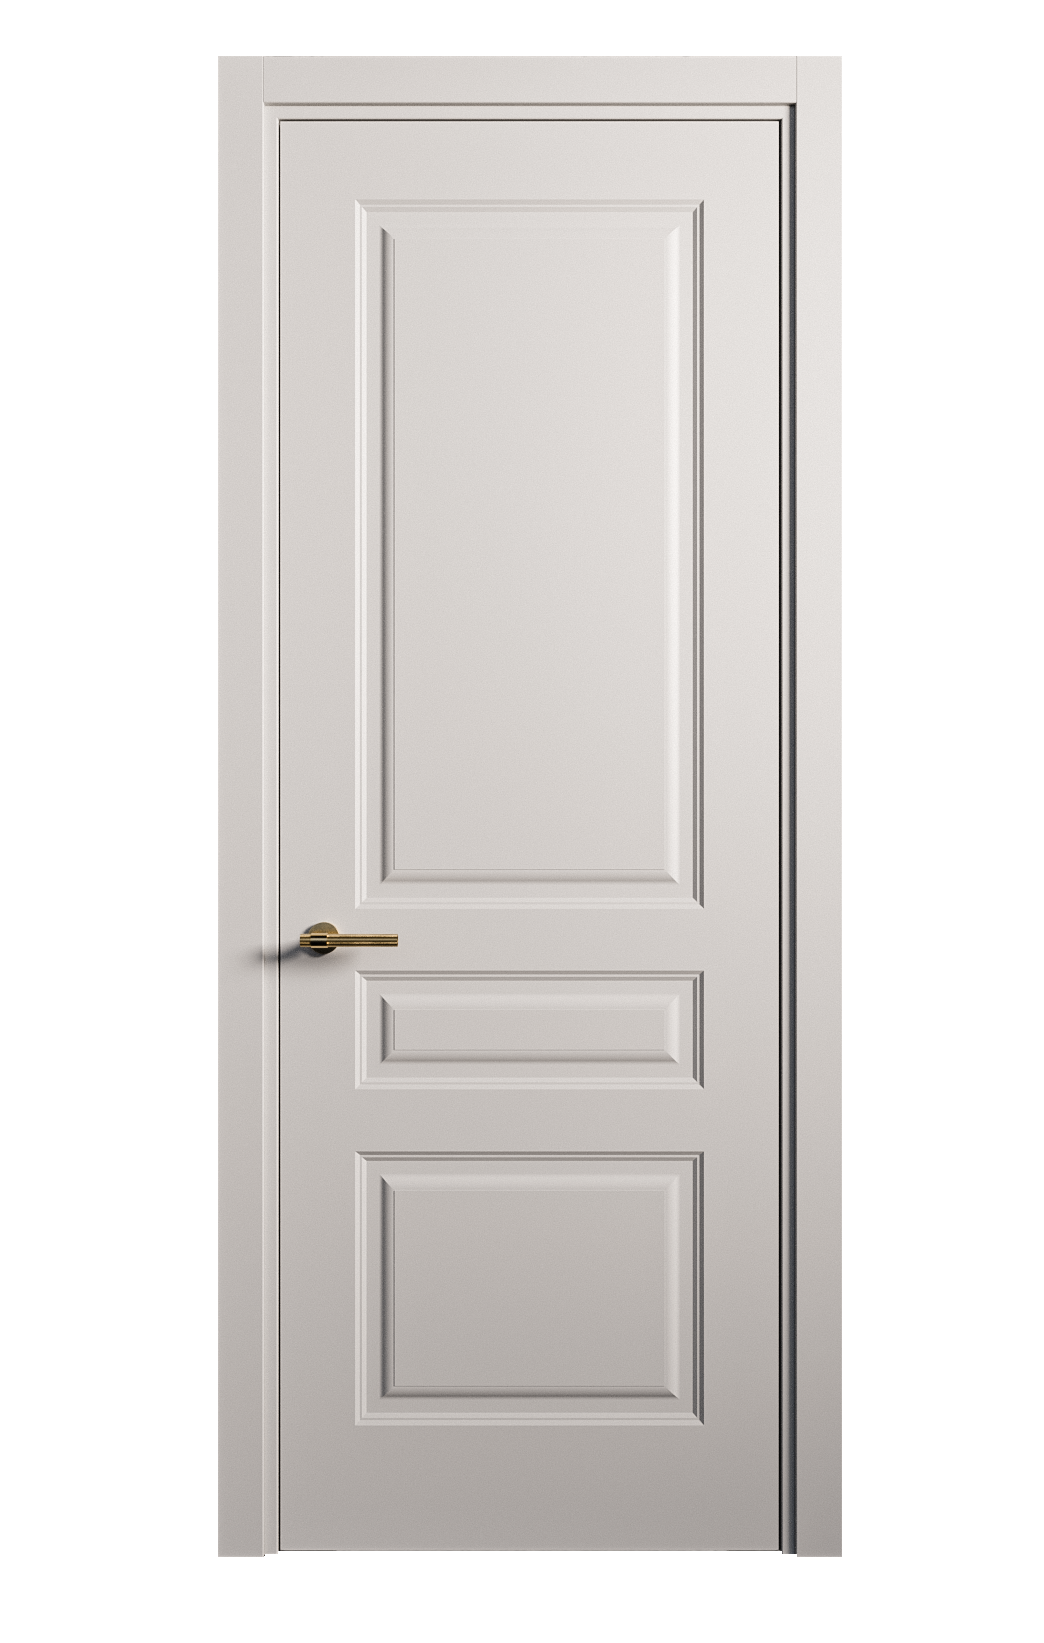 Межкомнатная дверь Вита-2 глухая эмаль ral 7047 26378